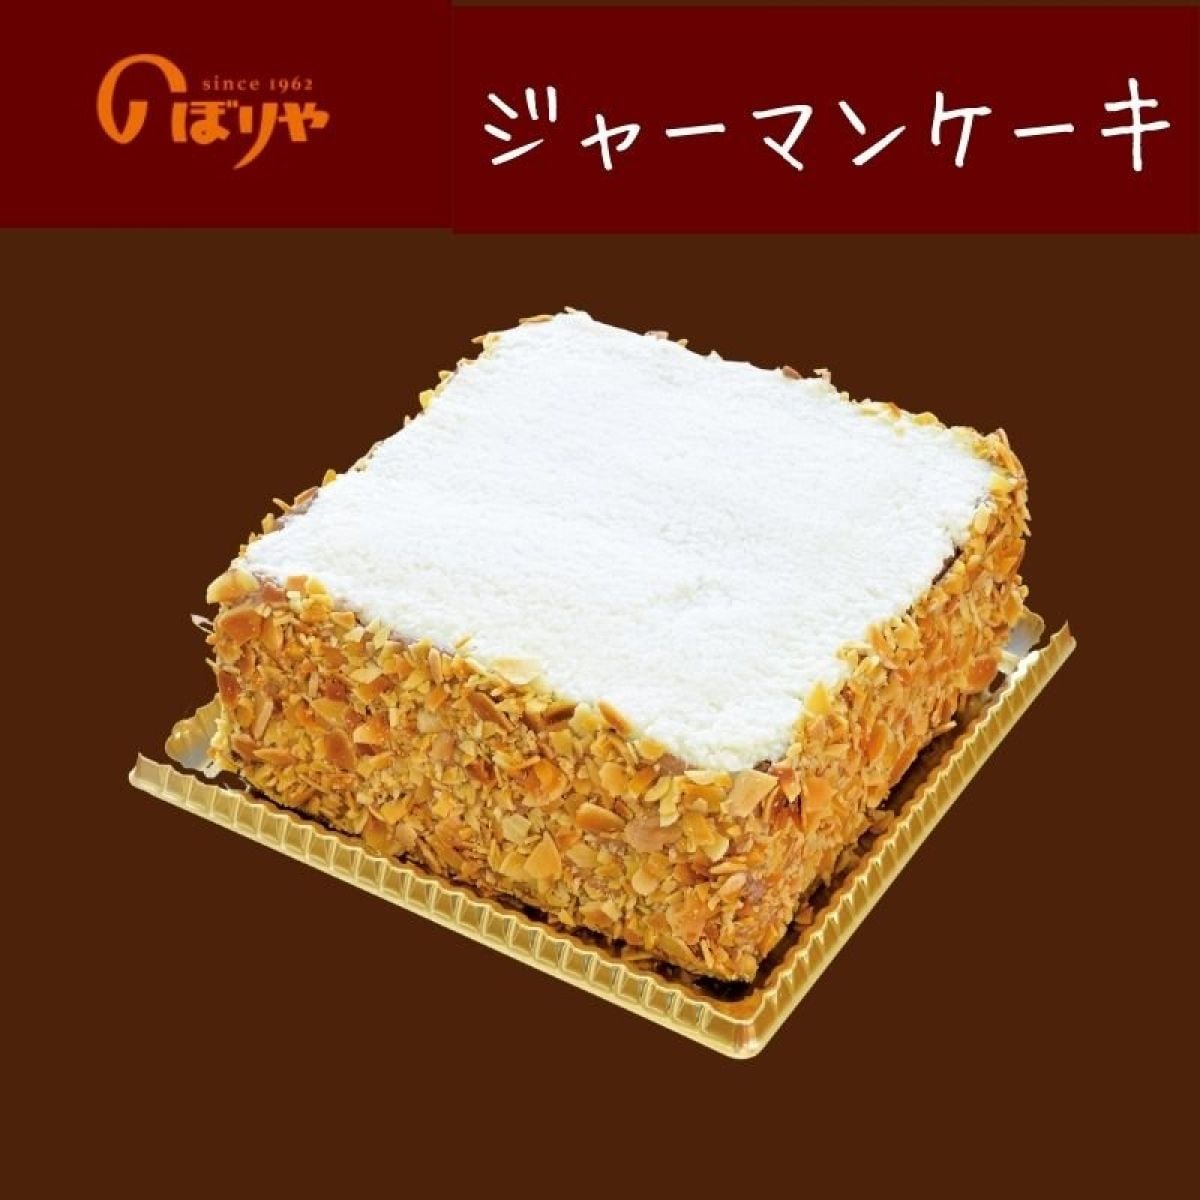 【沖縄発祥のケーキ】のぼりやのジャーマンケーキ